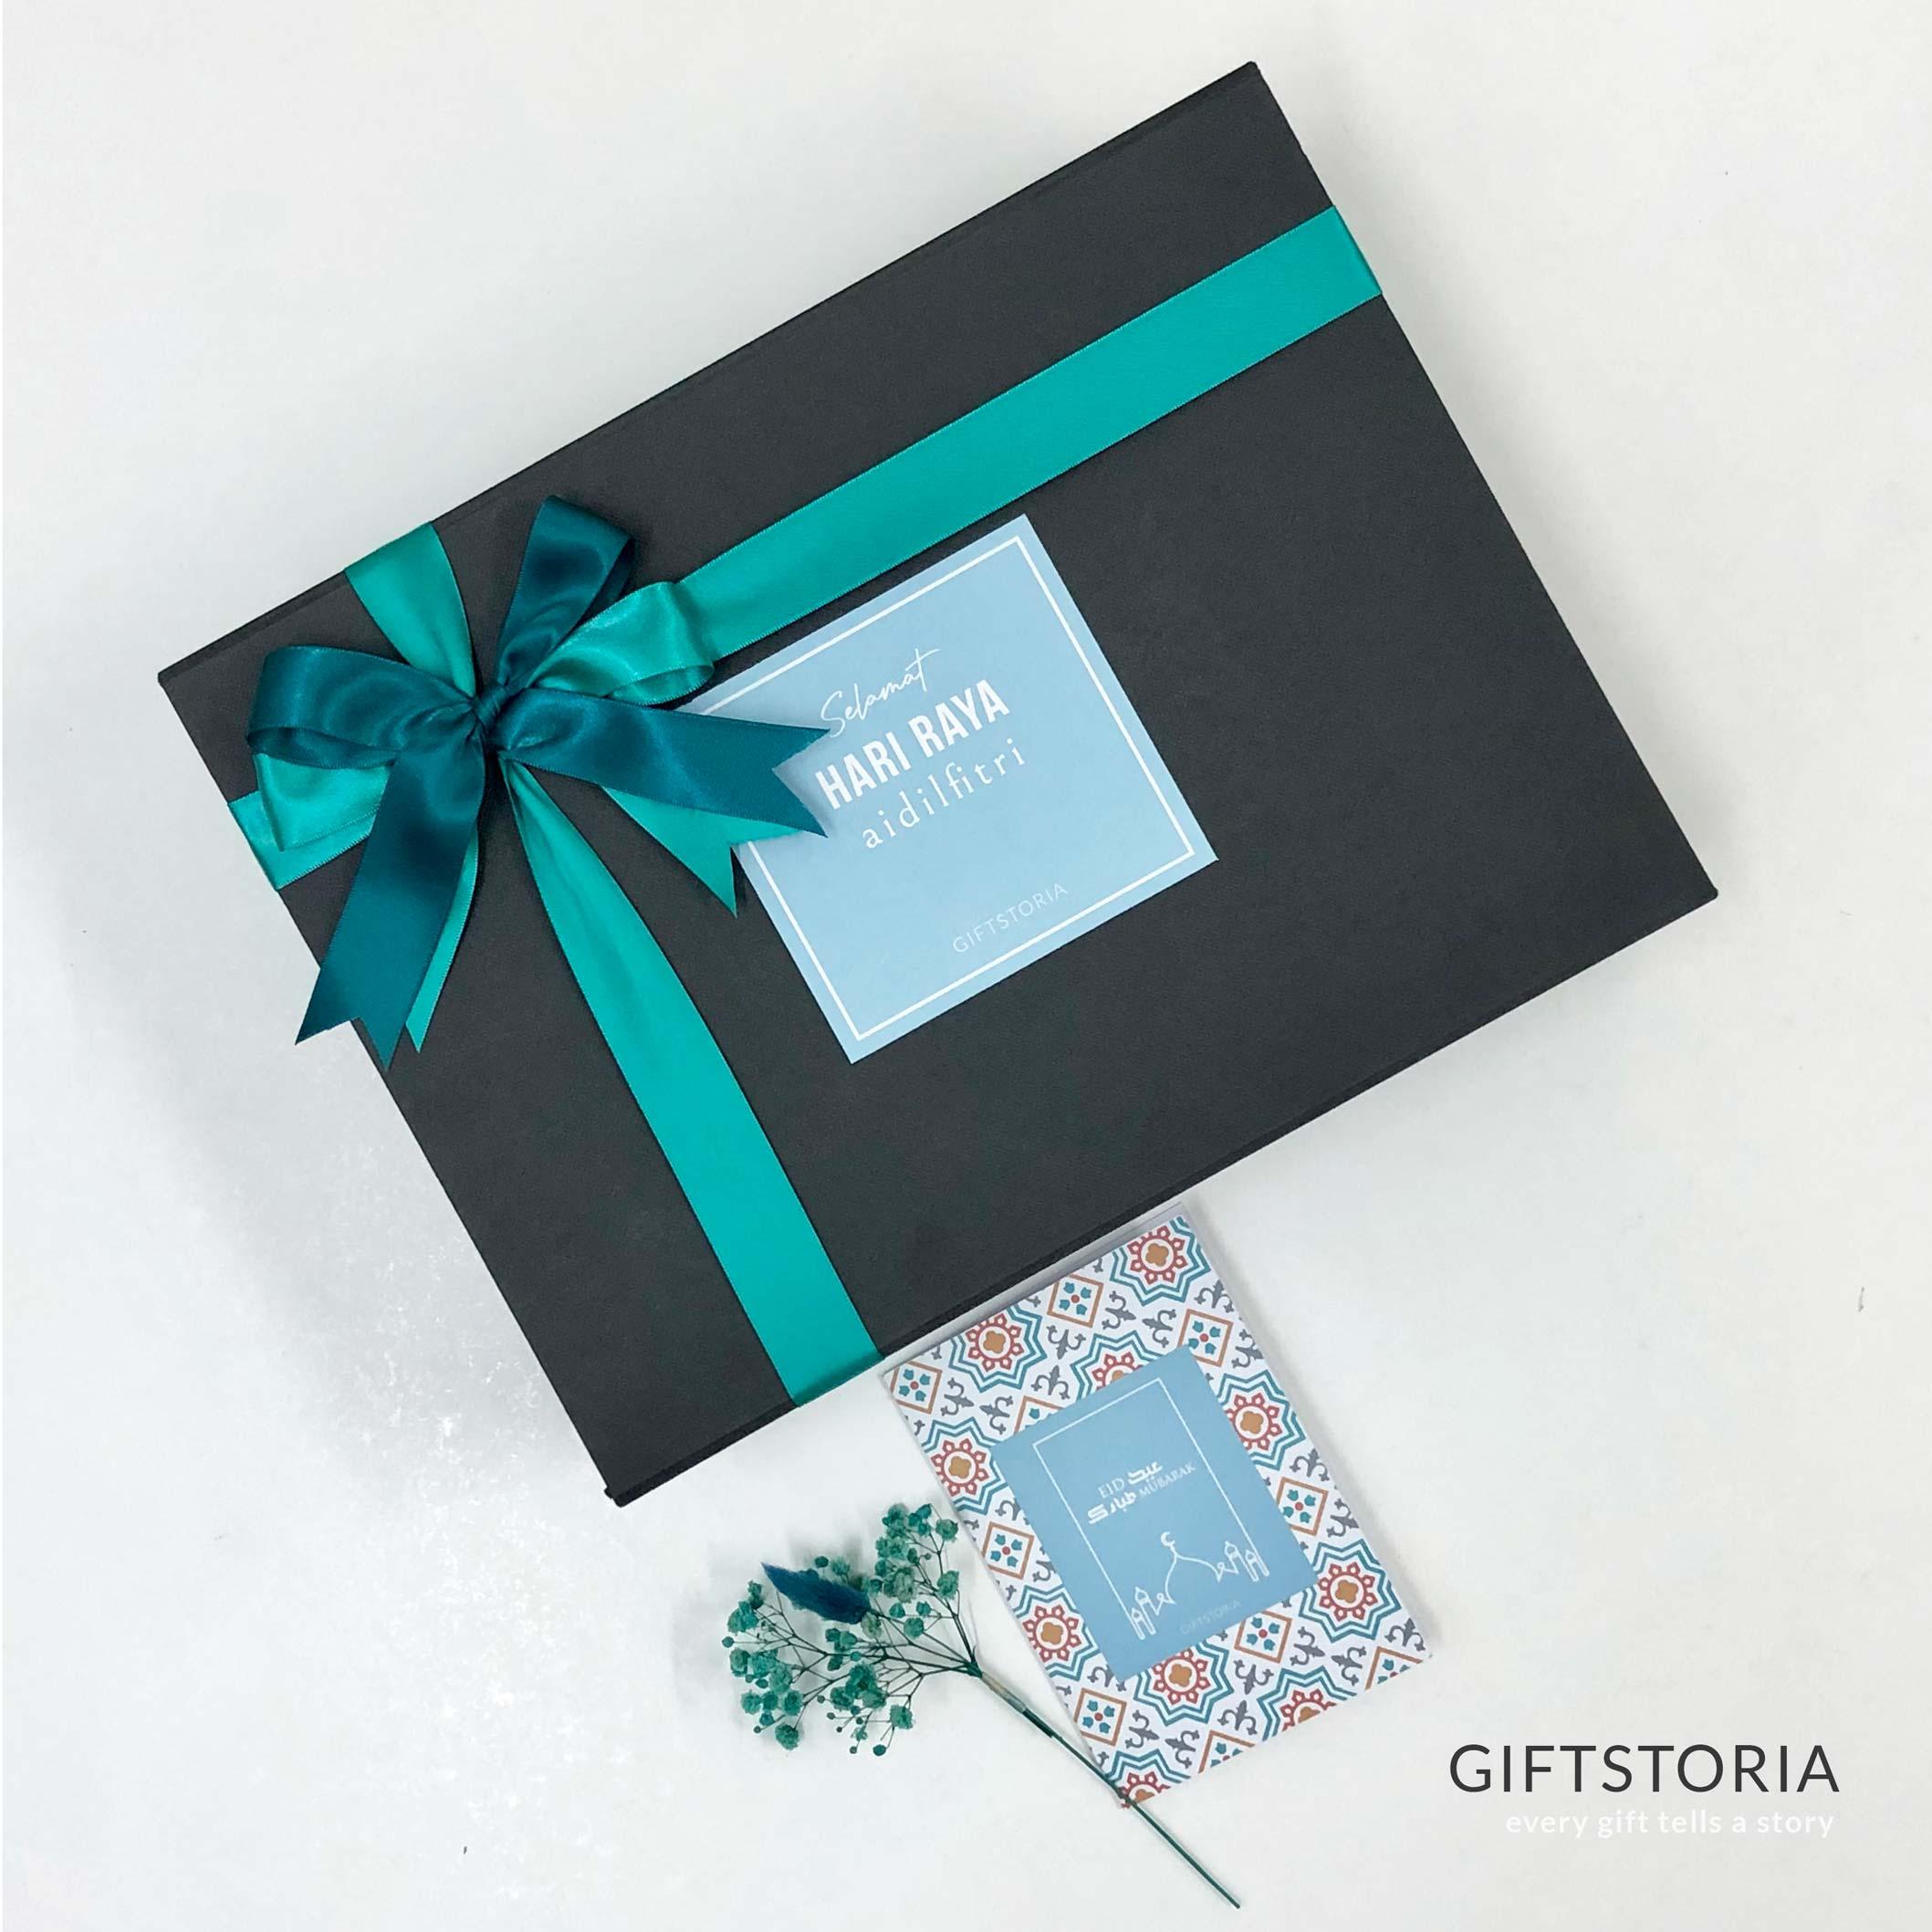 Ceria Aidilfitri Gift Box - Hari Raya